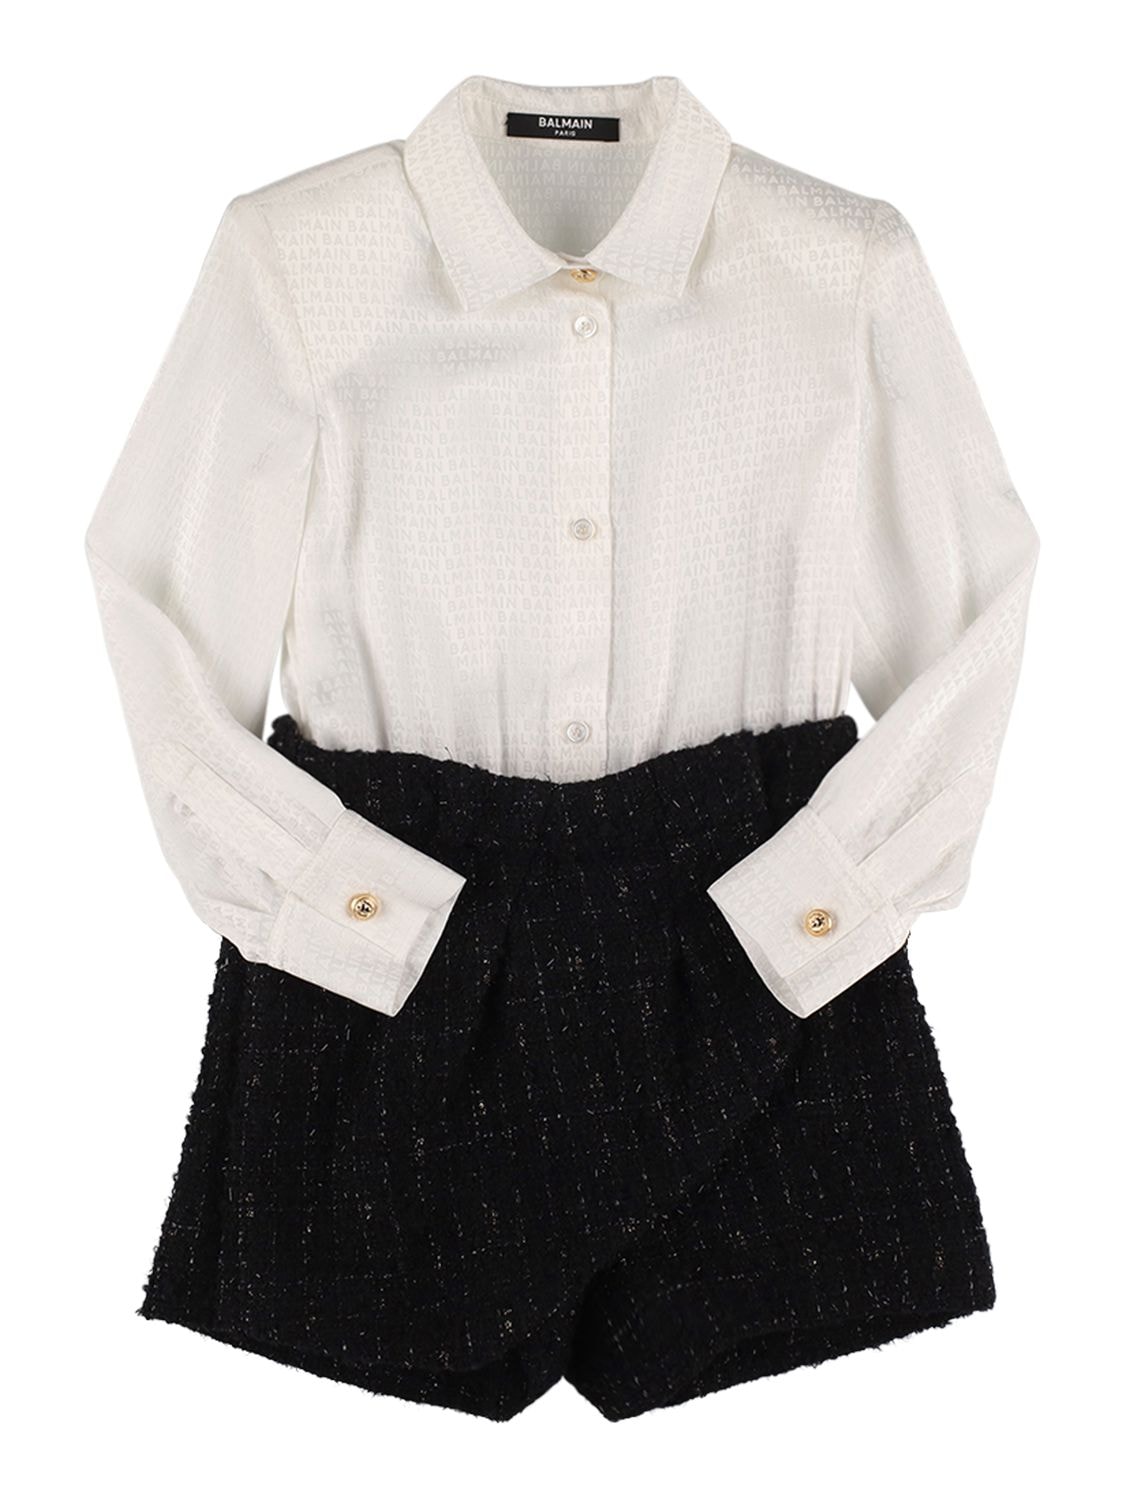 Balmain Kids' Wool & Cotton Tweed Playsuit In White,black